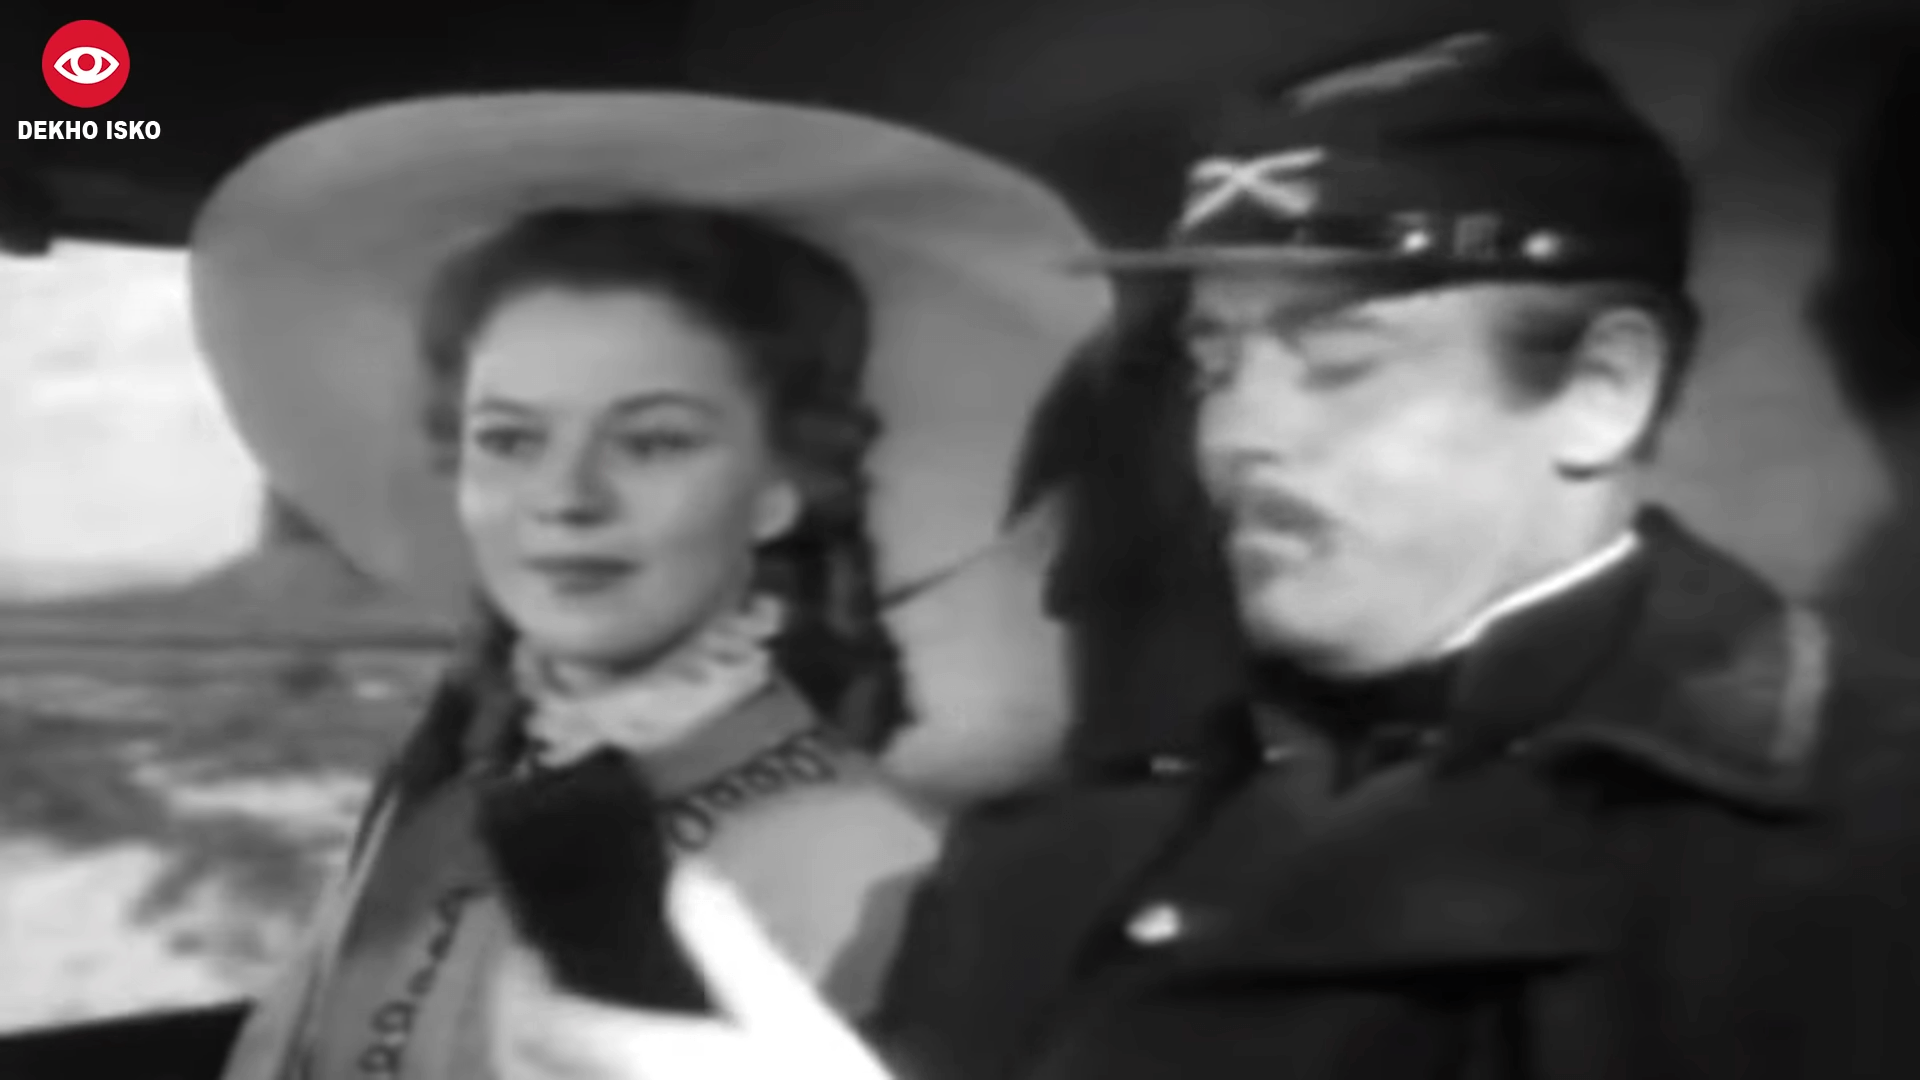 movie scene in 1948 with hero using gps